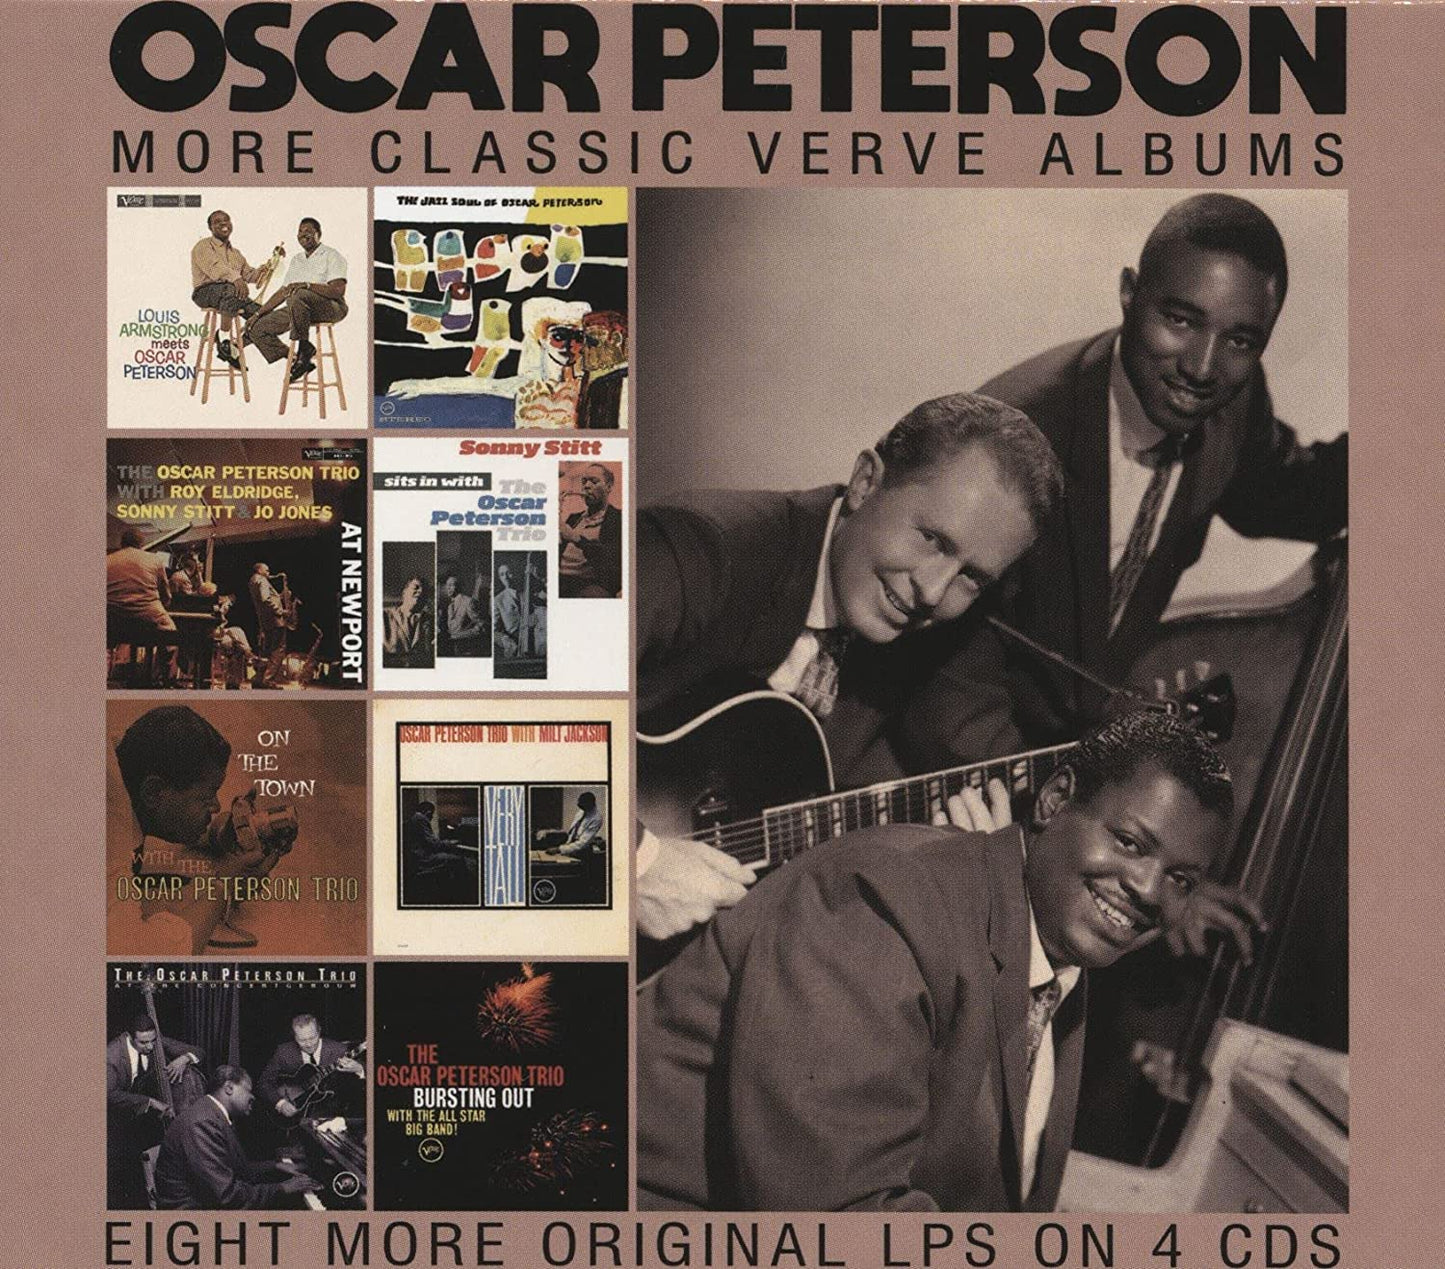 OSCAR PETERSON: MORE CLASSIC VERVE ALBUMS (4 CDS)